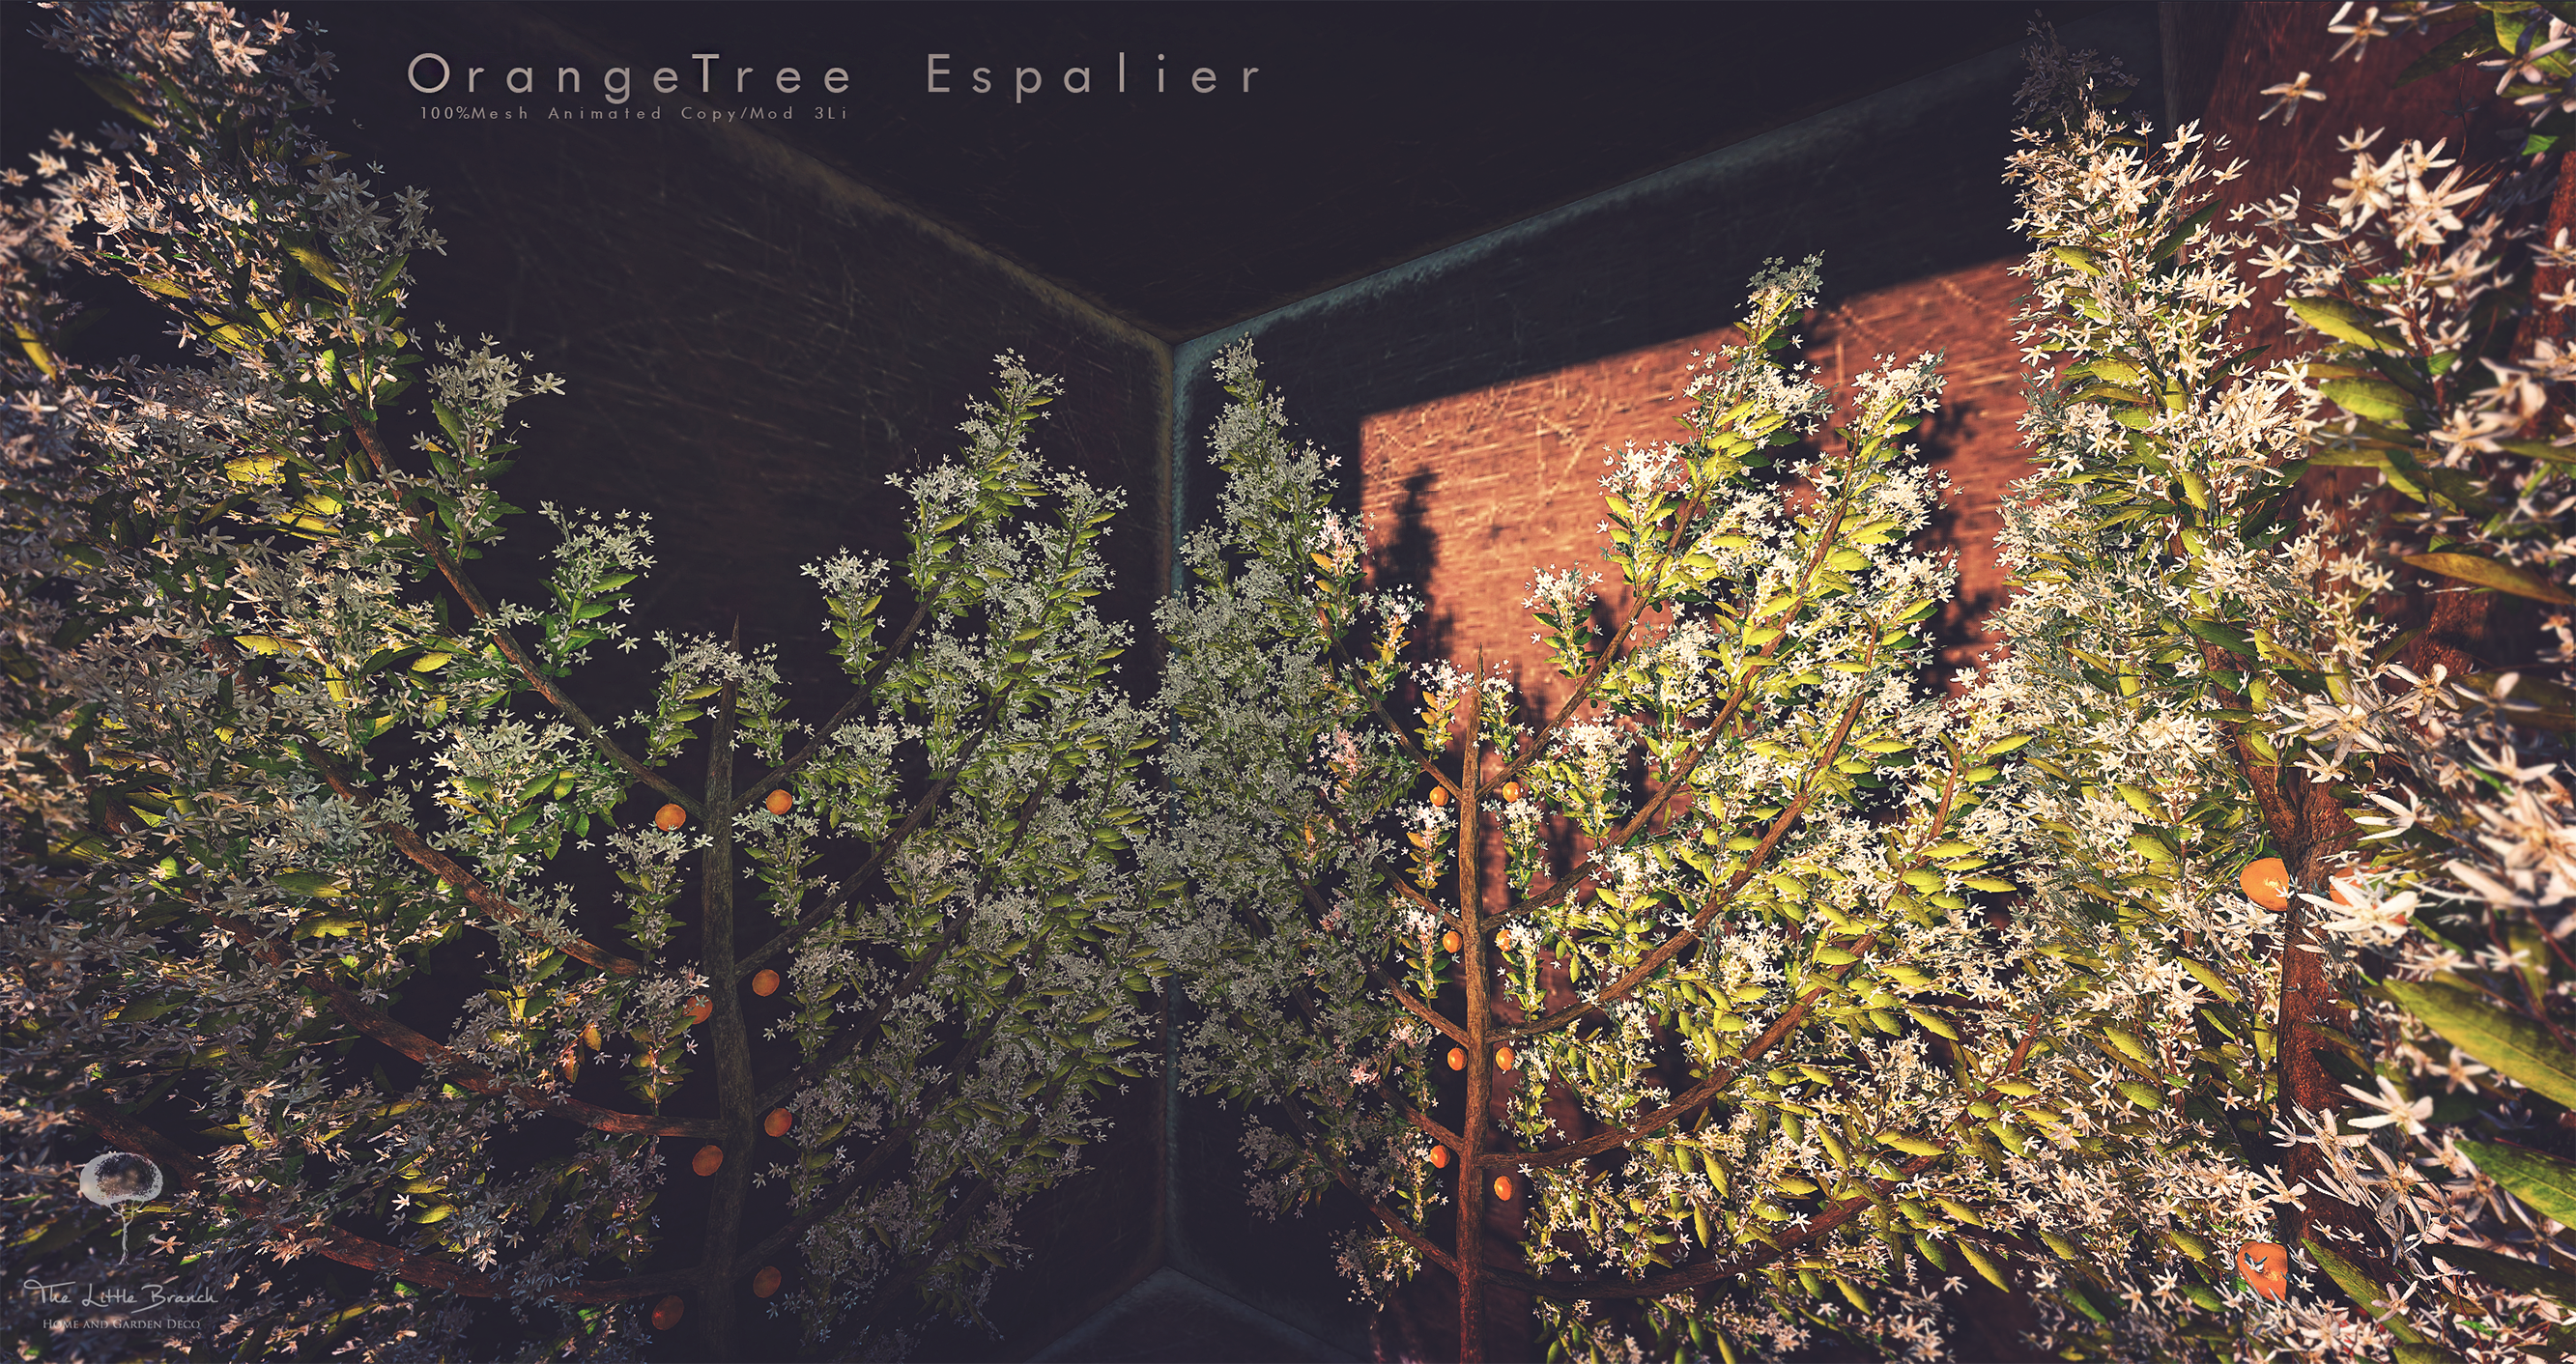 The Little Branch – Orange Tree Espalier